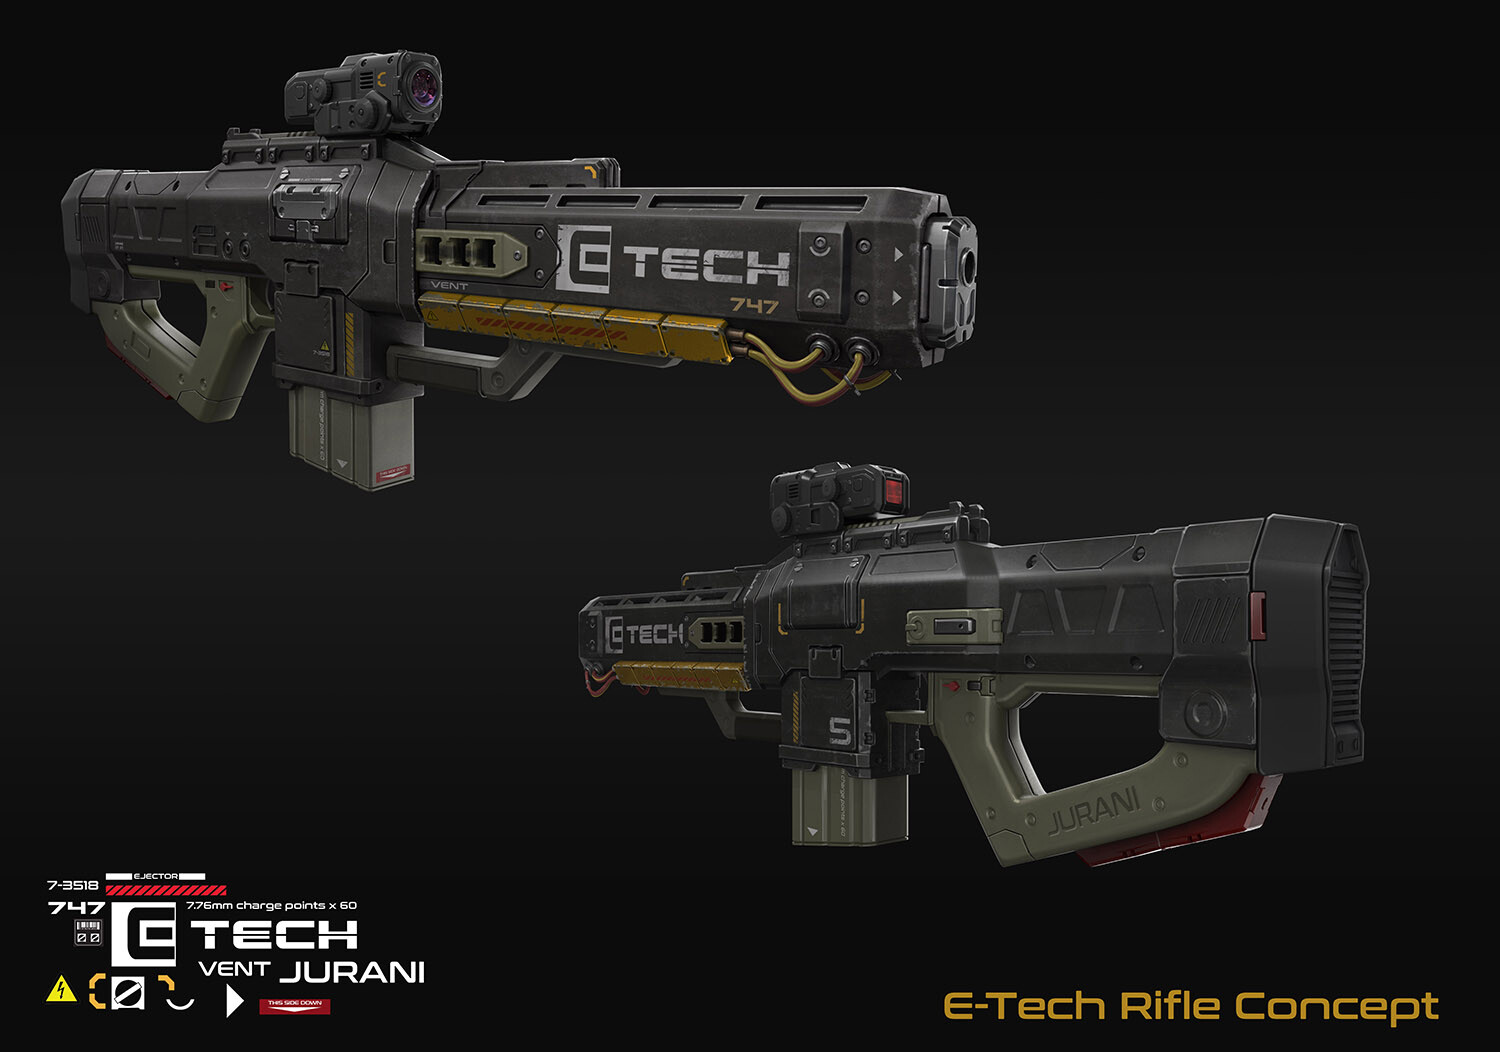 E-tech Rifle Concept